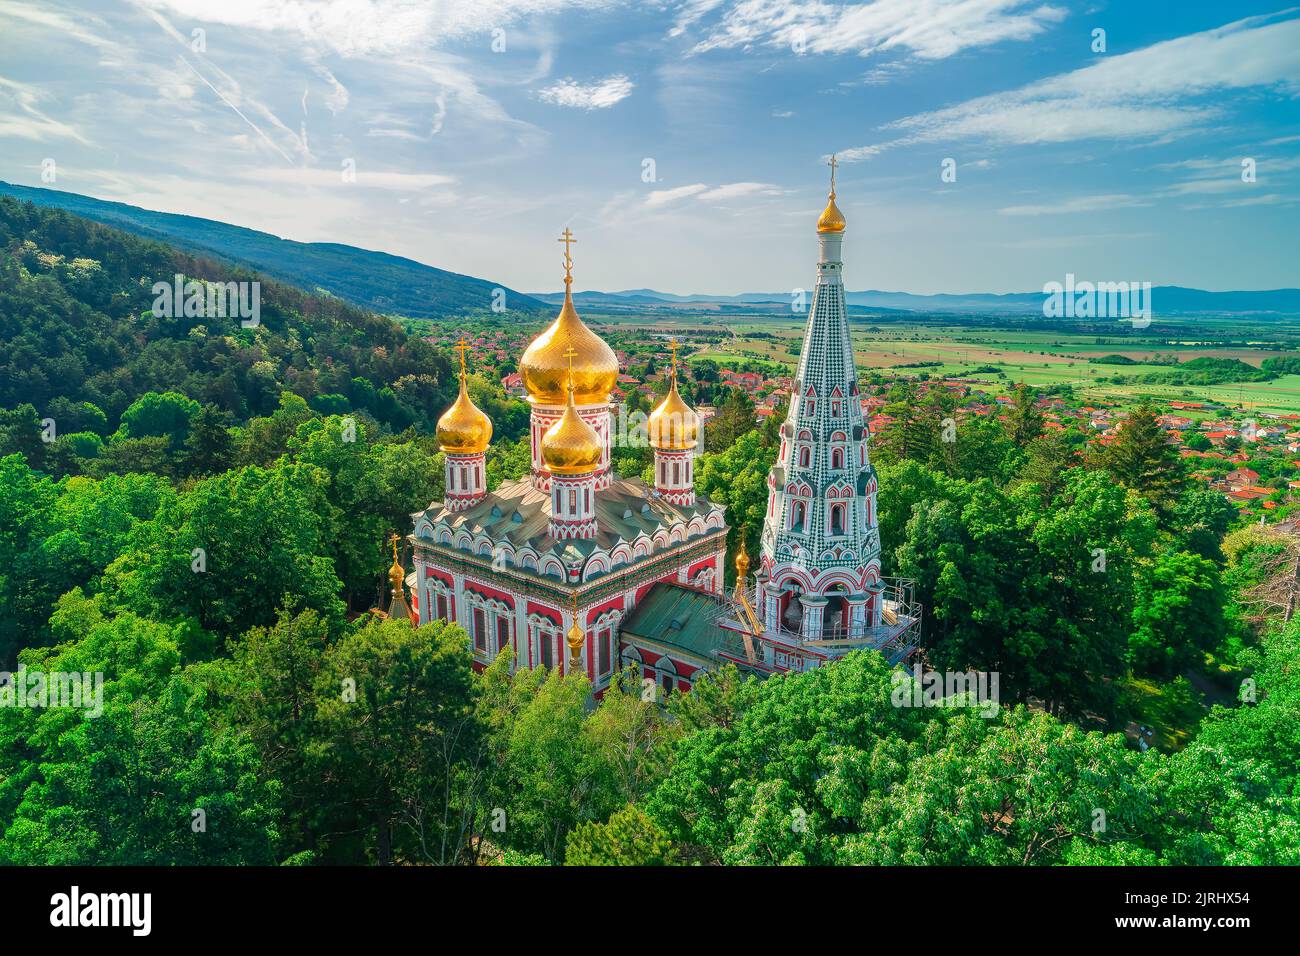 Shipka Memorial Russian Church, town of Shipka, Bulgaria, aerial drone view Stock Photo